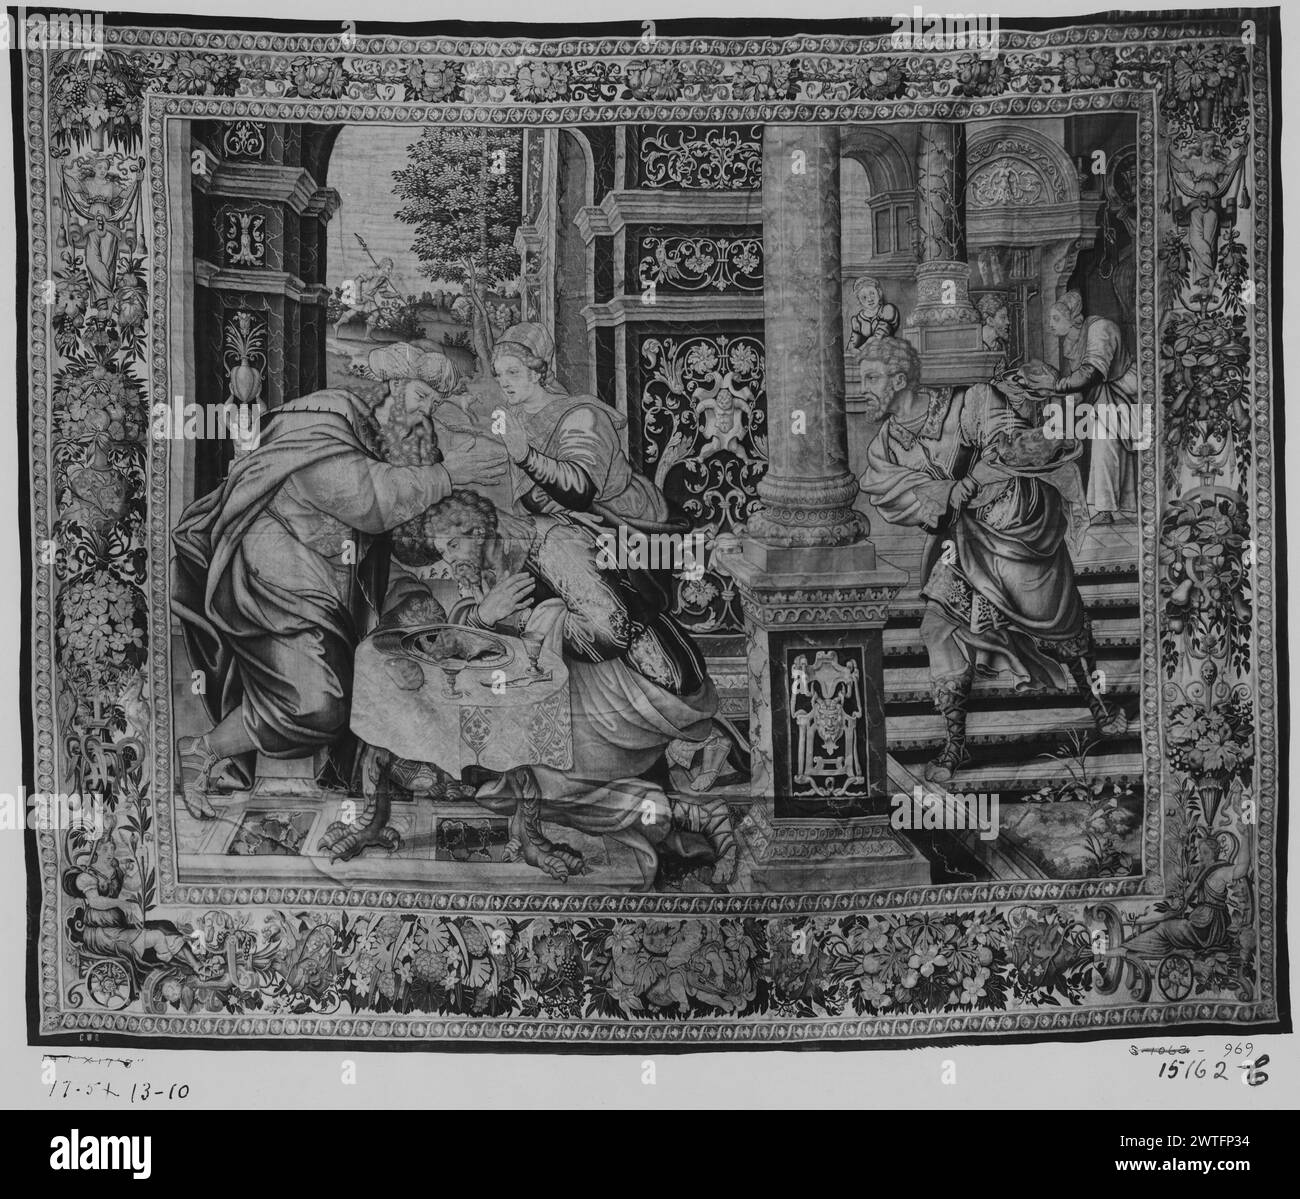 La bénédiction d'Isaac de Jacob et Esau. Orley, Bernart van (Netherlandish (avant 1600) - Flandre, CA.1492-1542) (Designed after, attr.) [Peintre] Coxie, Michiel (The Elder) (Netherlandish (avant 1600) - Flandre, 1499-1592) (conçu après, attr.) [Peintre] Floris, Cornelis (le jeune) (pays-Bas (avant 1600) - Flandre, 1514-1575) (conçu après, Borders, attr.) [Dessinateur] c. 1550-1560 tapisserie dimensions : H 14'1' x l 17'3' tapisserie matériaux/techniques : laine (non teinte, chaîne : 6-7/cm) ; laine et soie (teinte, trame) culture : Centre de tissage flamand : Bruxelles histoire de propriété : Barberini coll. Banque D'Images